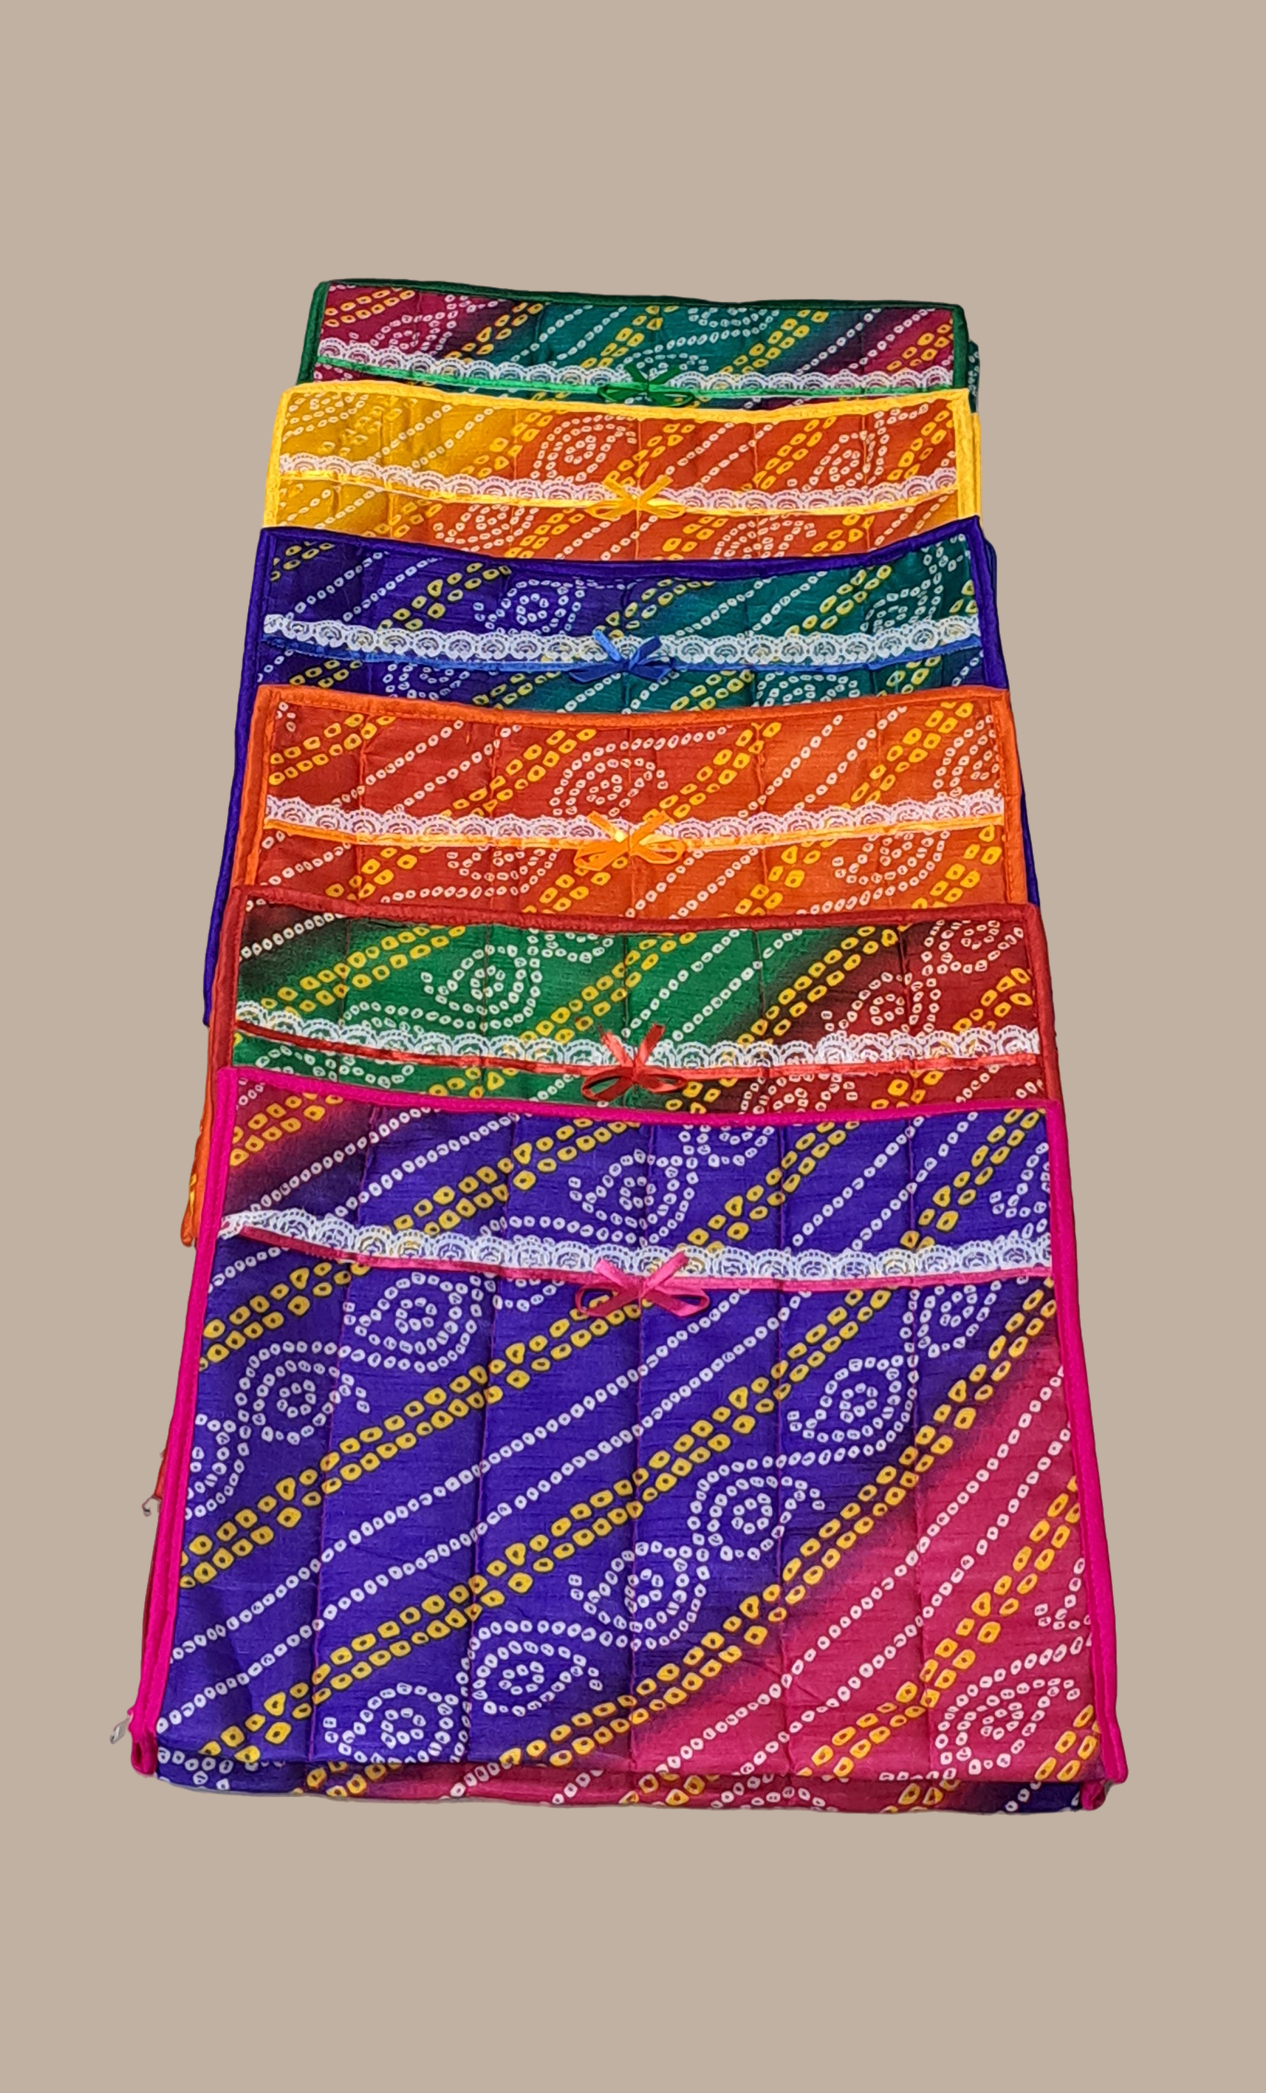 Orange Bandhani Sari Cover